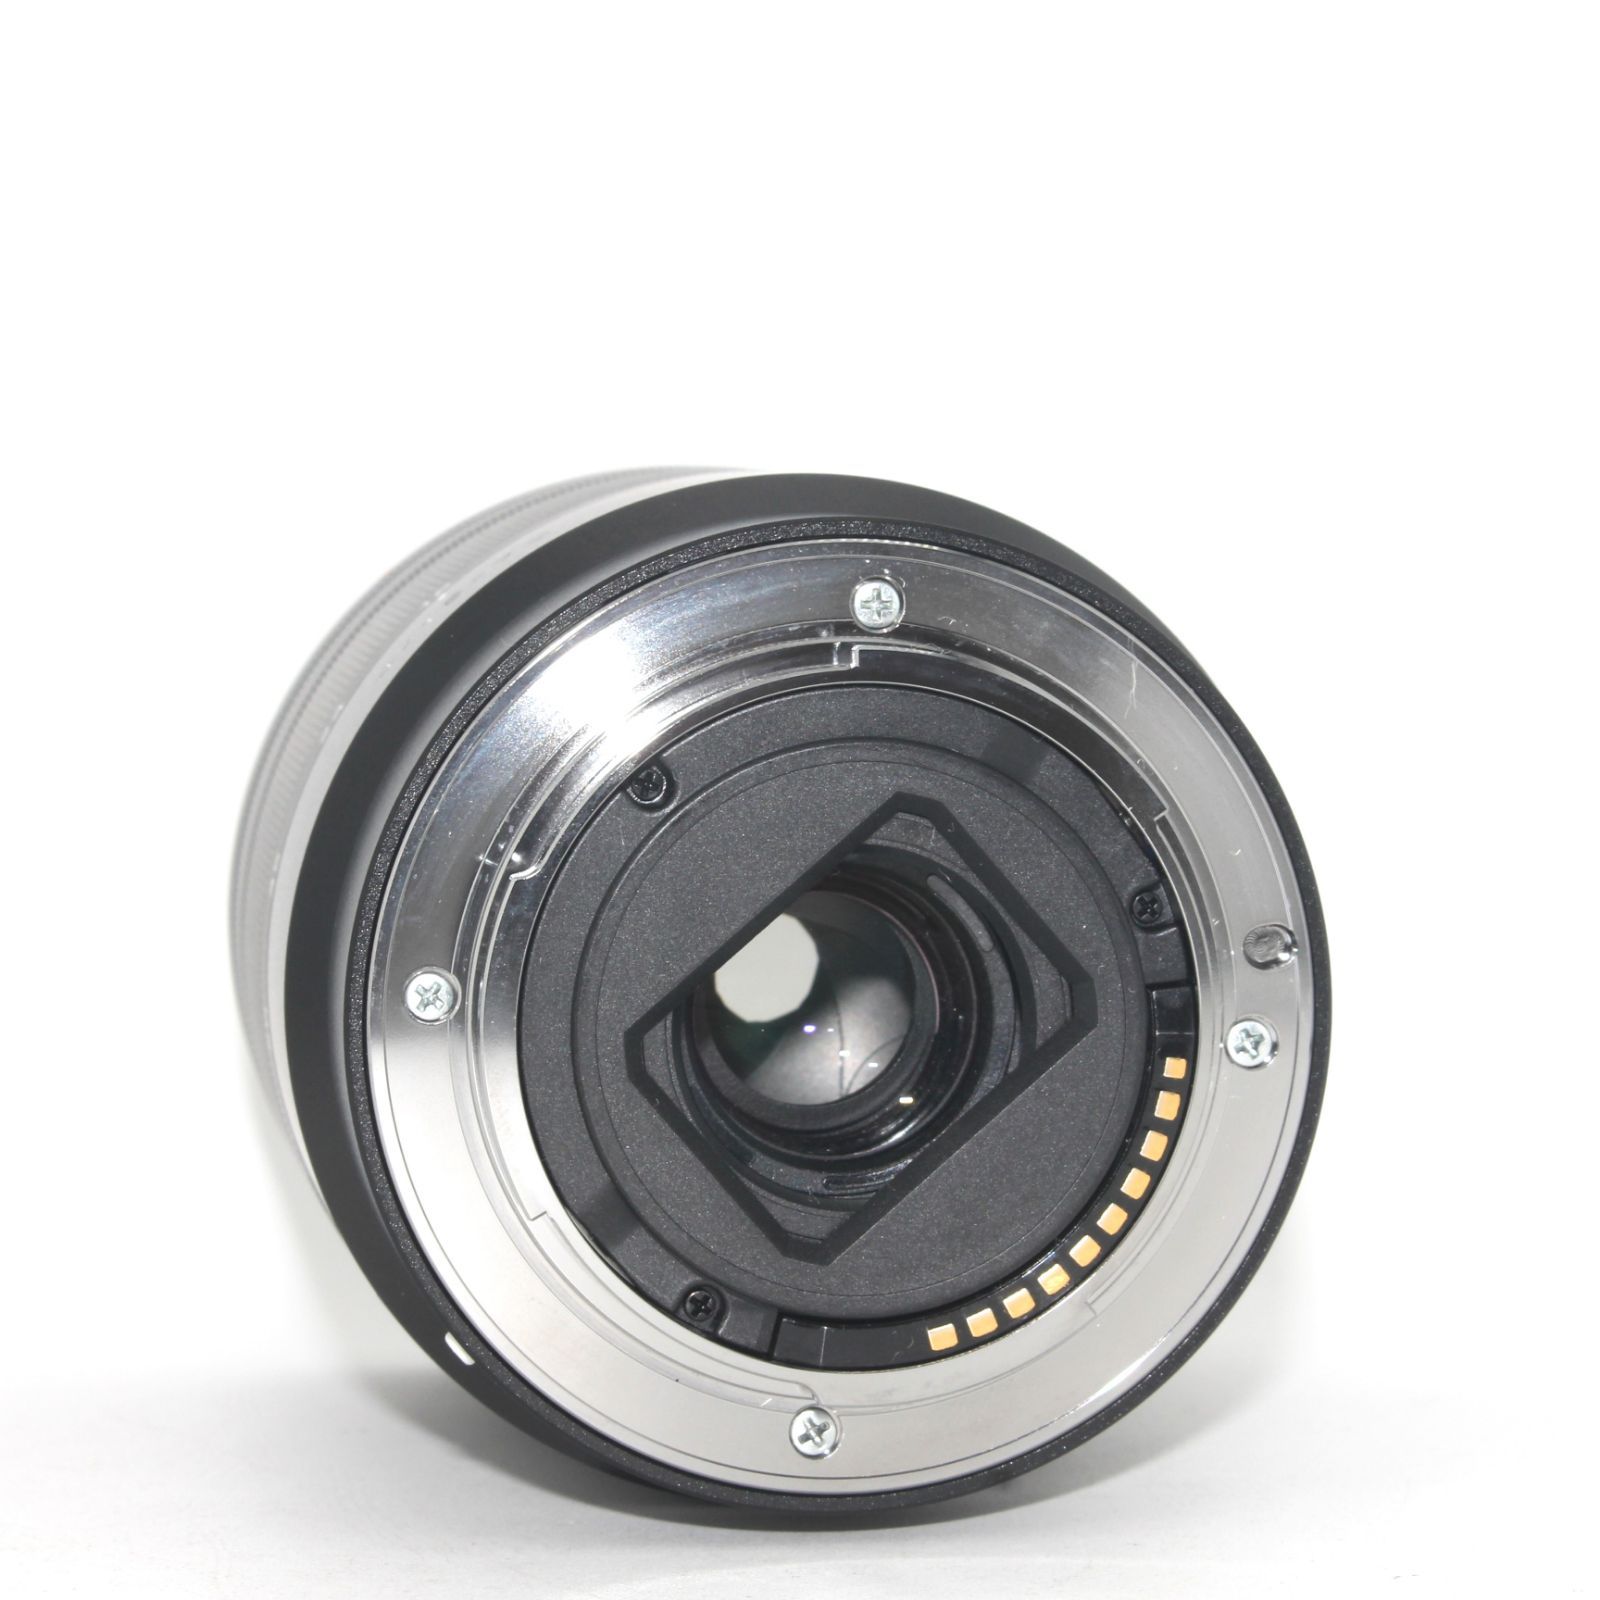 美品 SONY ソニー 標準ズームレンズ APS-C Vario-Tessar T* E 16-70mm F4 ZA OSS ツァイスレンズ  デジタル一眼カメラα[Eマウント]用 純正レンズ / SEL1670Z